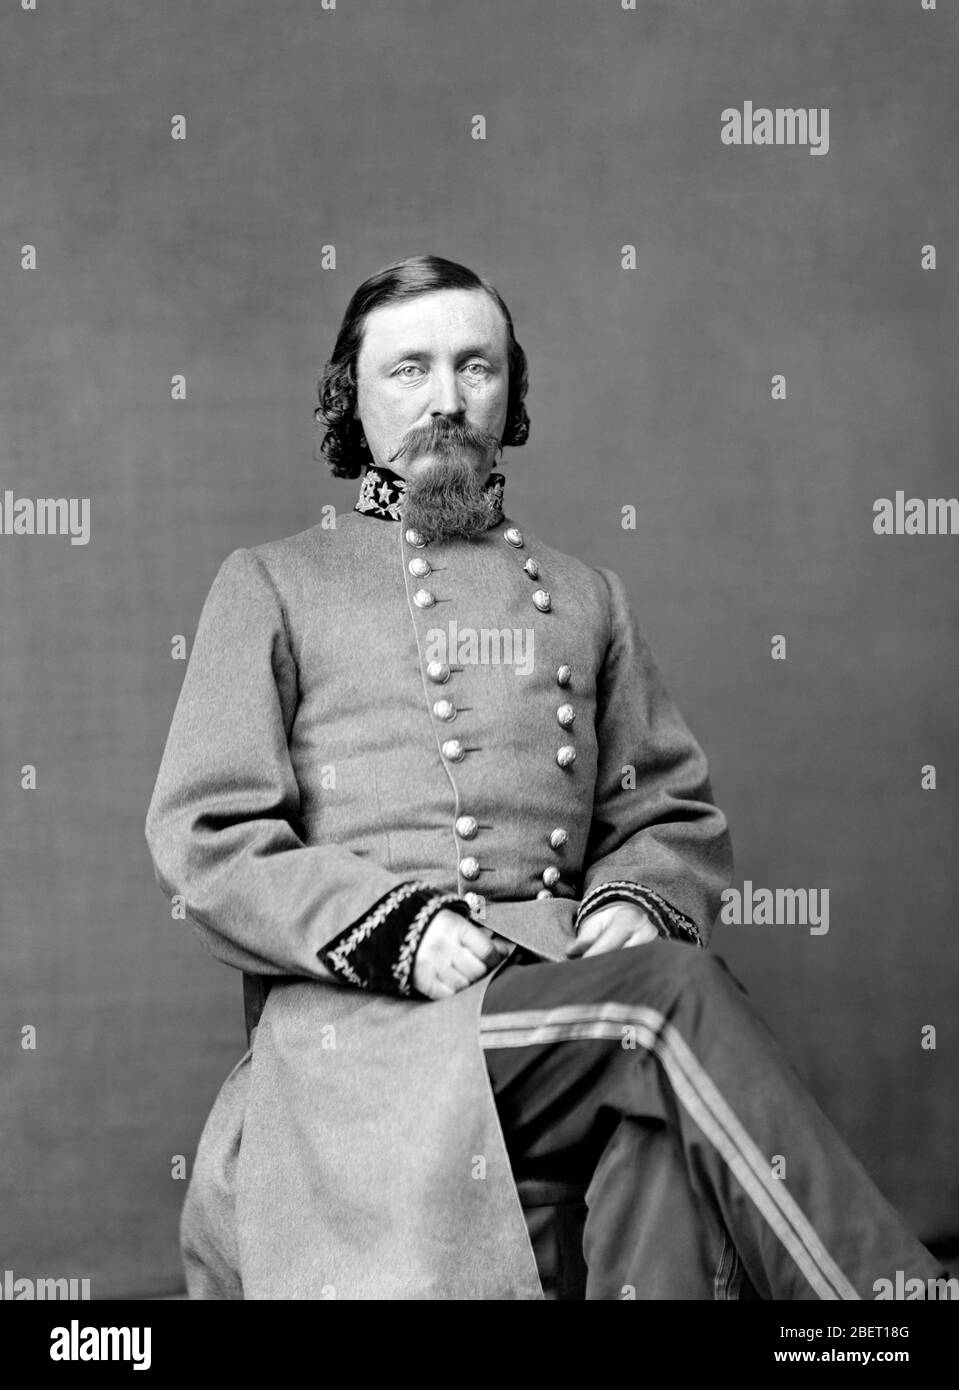 Amerikanischer Bürgerkrieg Geschichte Porträt des Konföderierten General George Pickett Stockfoto